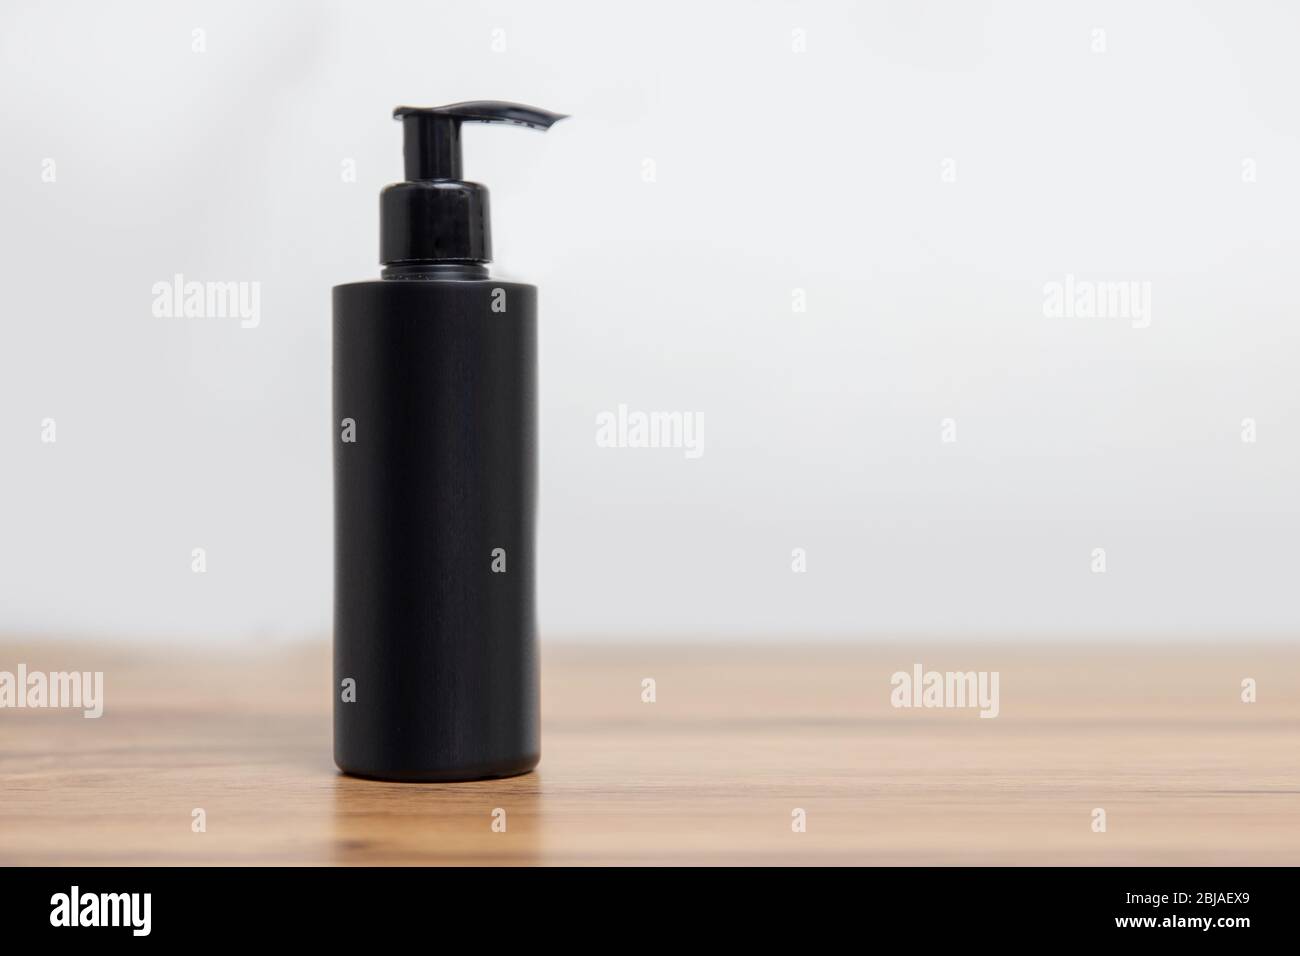 Maquette de bouteille noire pour shampooing cosmétique sur fond blanc simple Banque D'Images